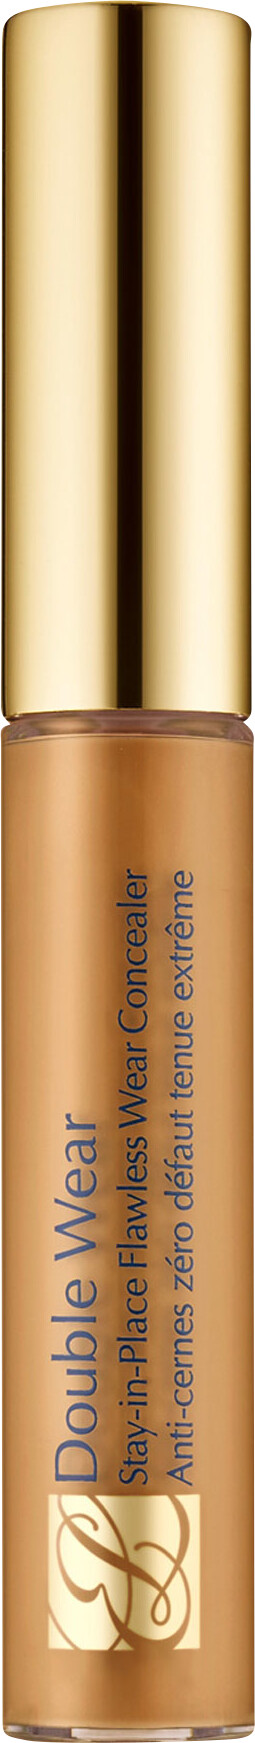 Estee Lauder Double Wear Stay-In-Place Flawless Wear Concealer 7ml 4N - Medium Deep